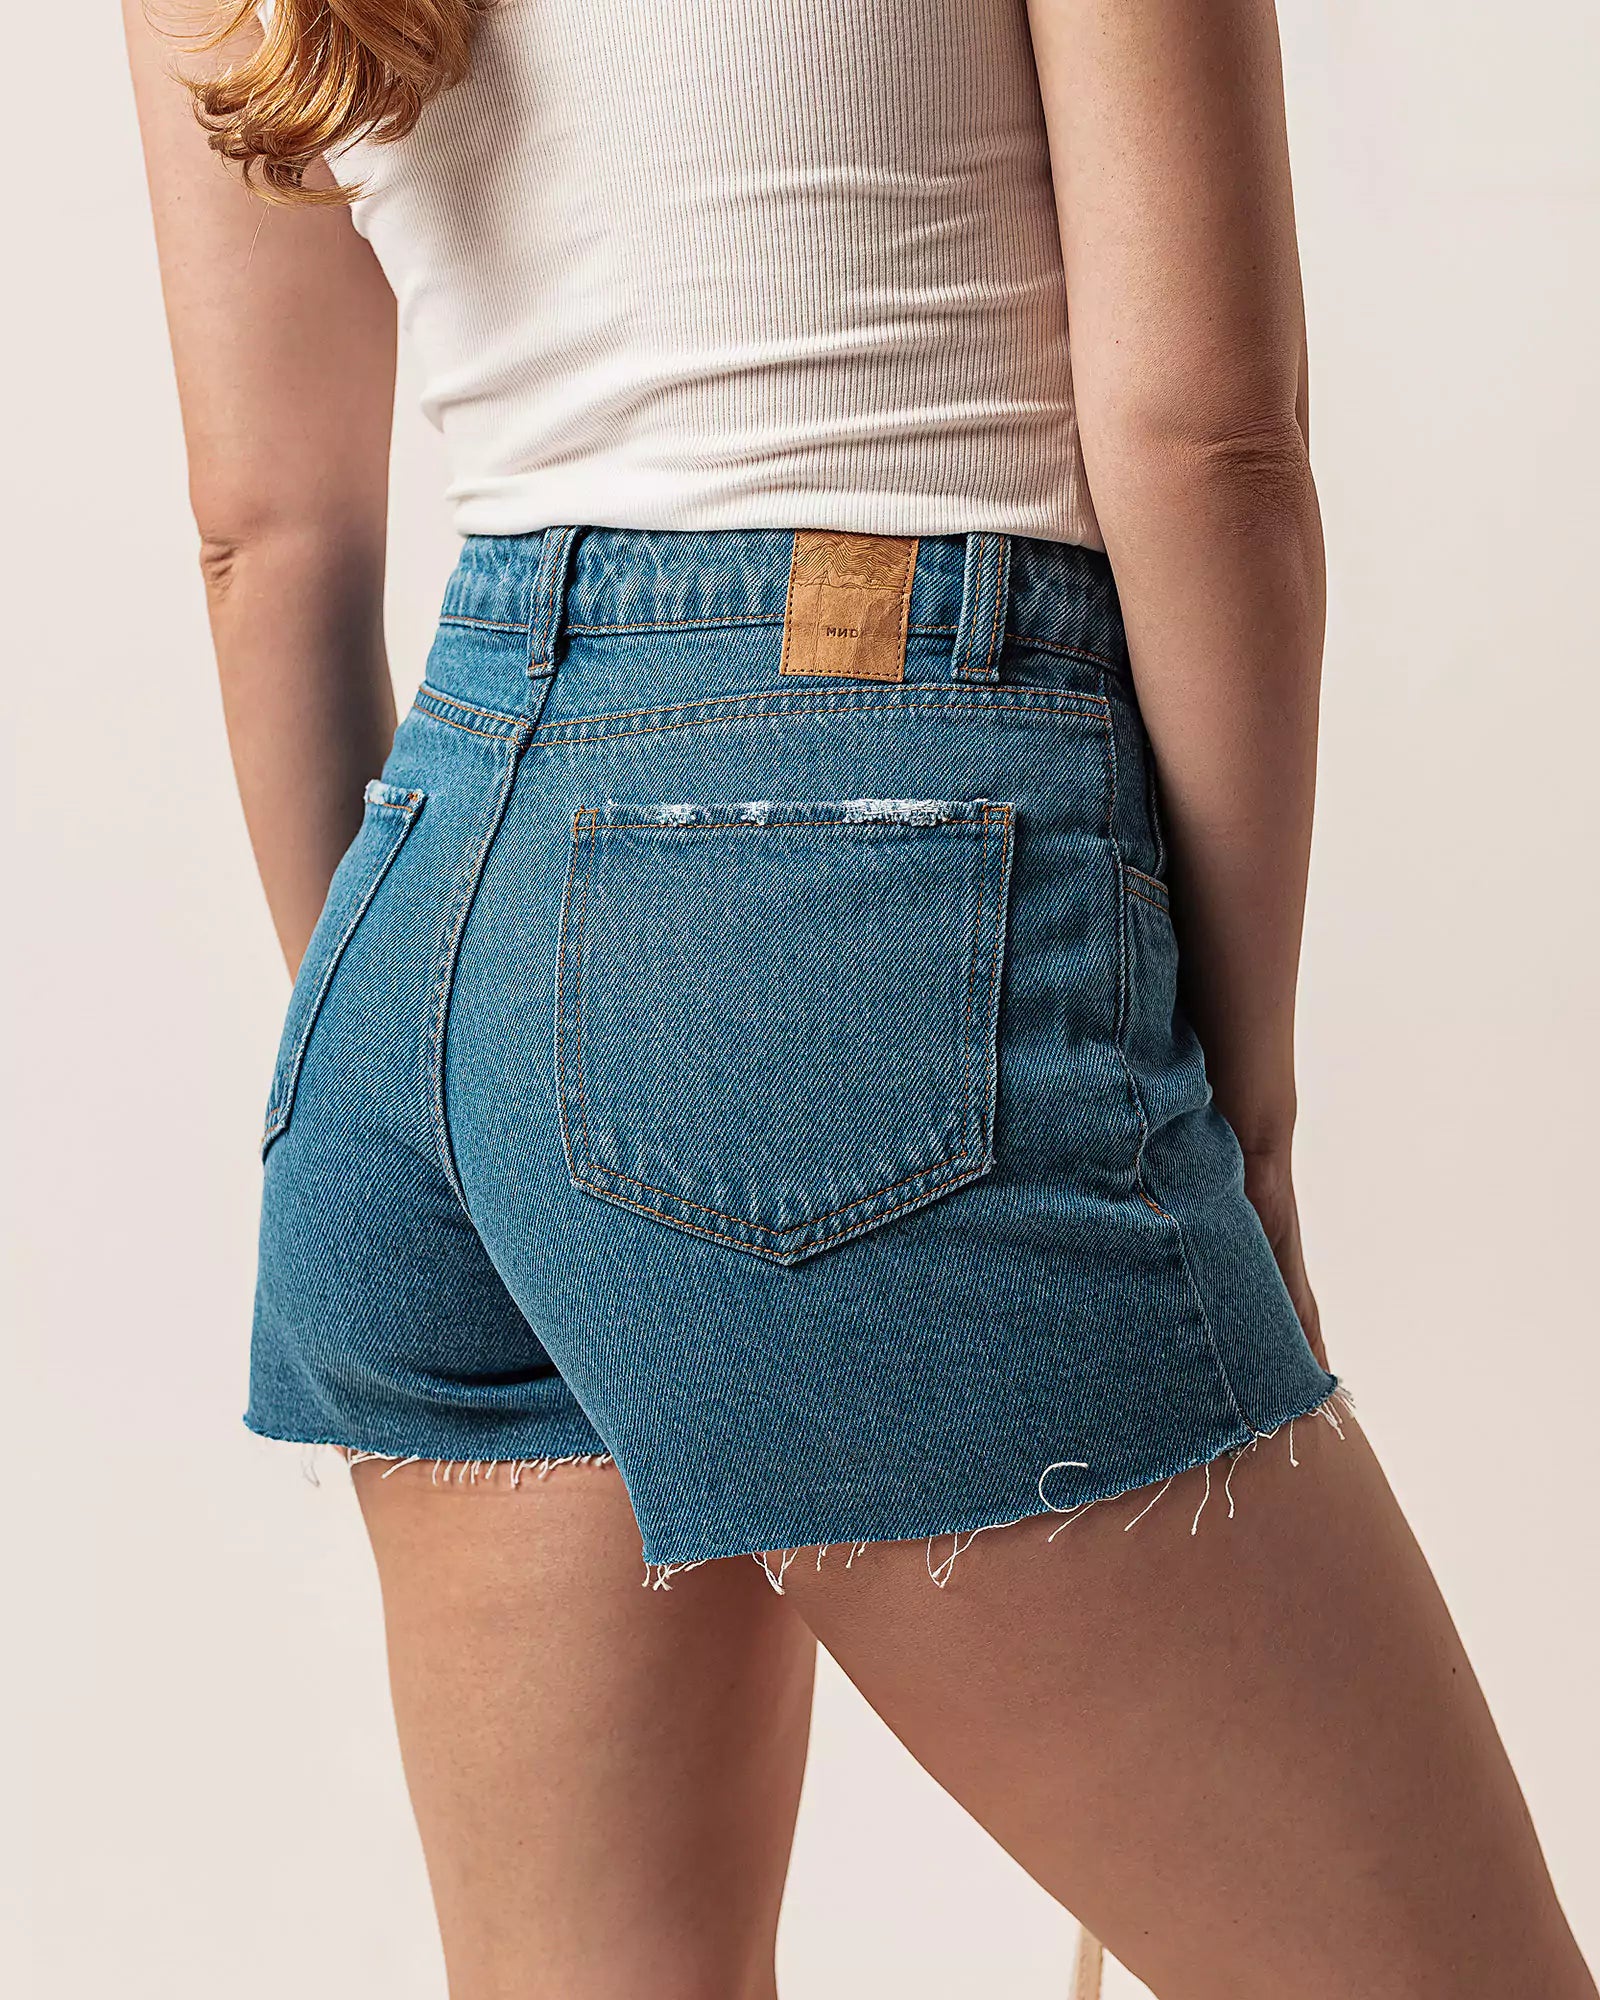 Short Curto Barra Desfiada Jeans Médio Claro Eco Denim™. Compre online moda sustentável e atemporal na Minimadeia. Roupas femininas estilosas, básicas e sustentáveis. Foto produto 02